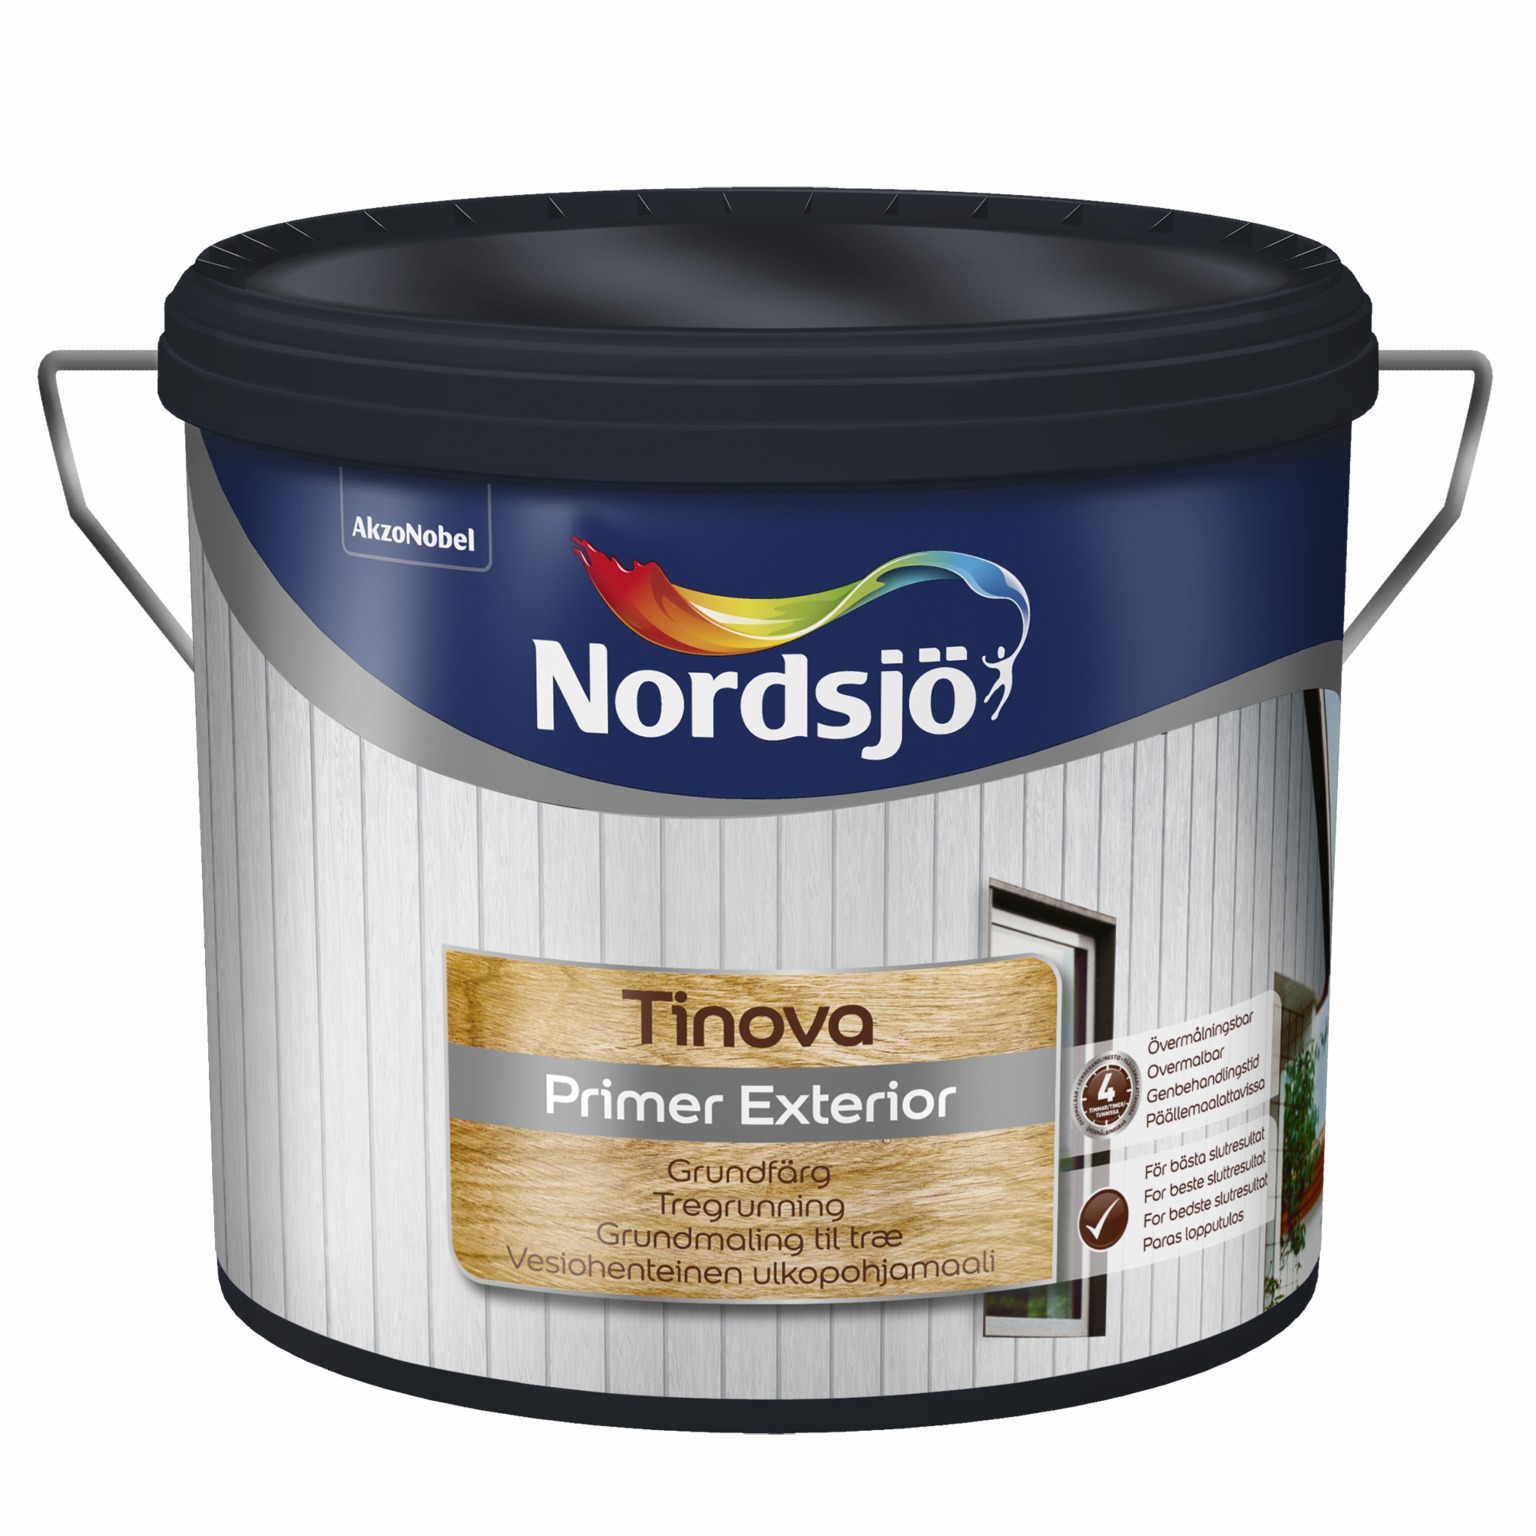 Nordsjö Tinova Primer Exterior - Bästa grundfärg